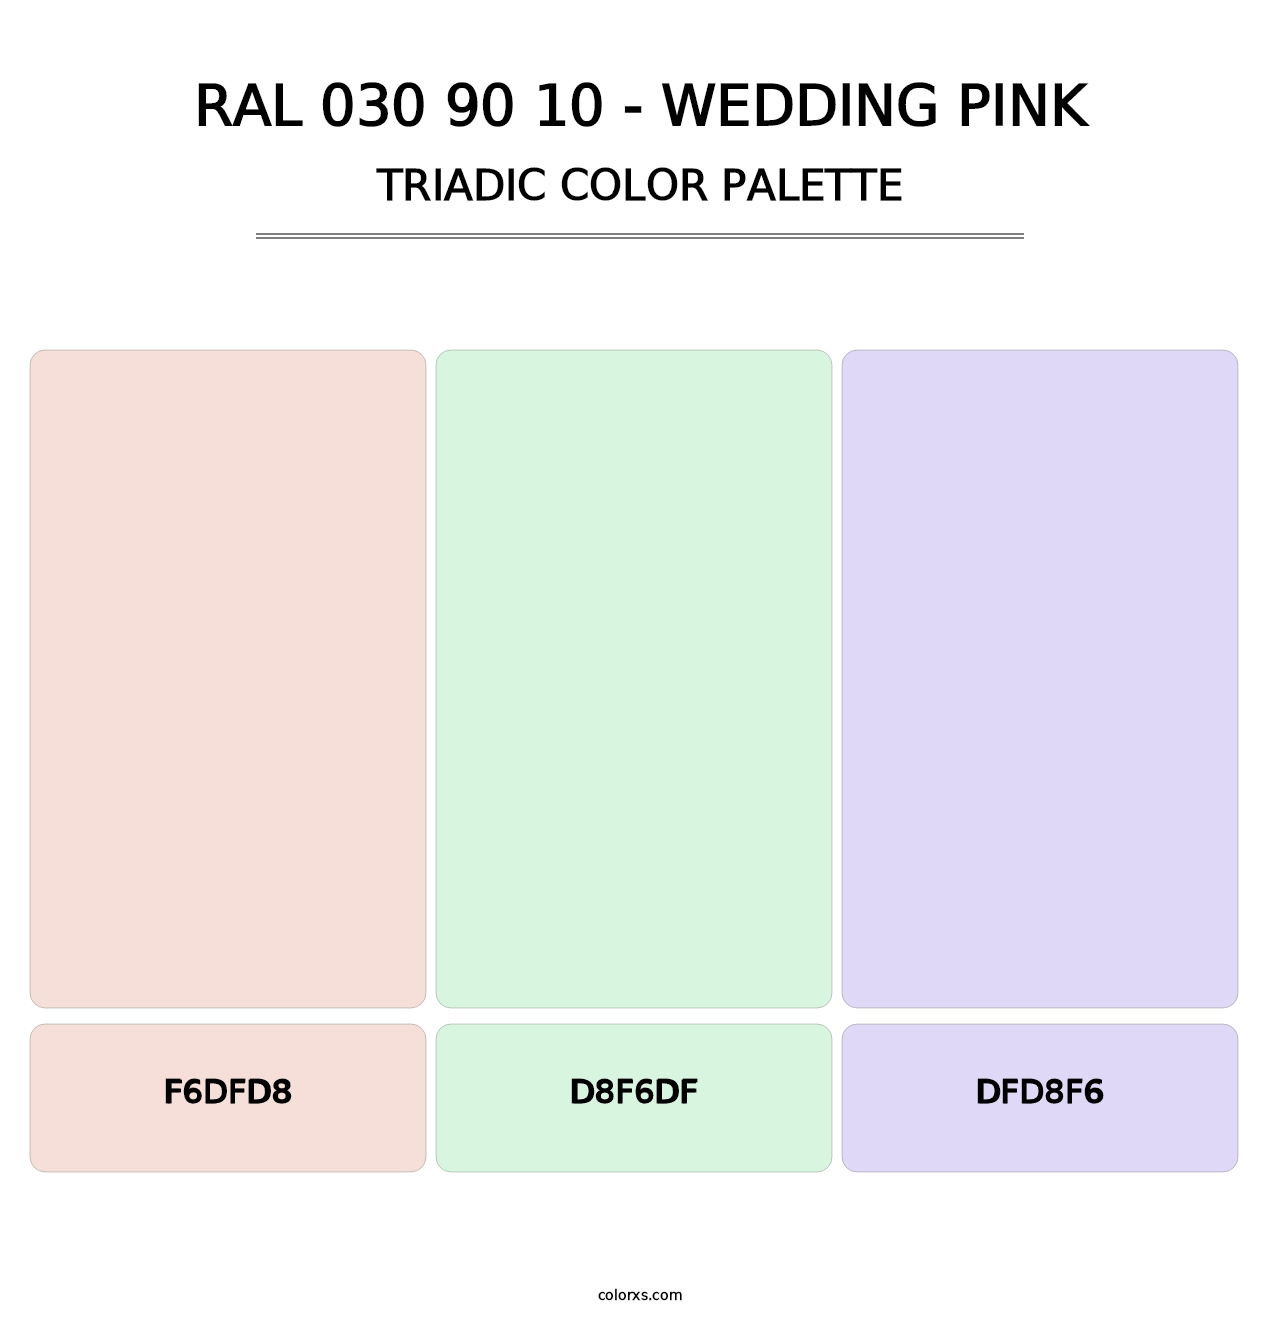 RAL 030 90 10 - Wedding Pink - Triadic Color Palette